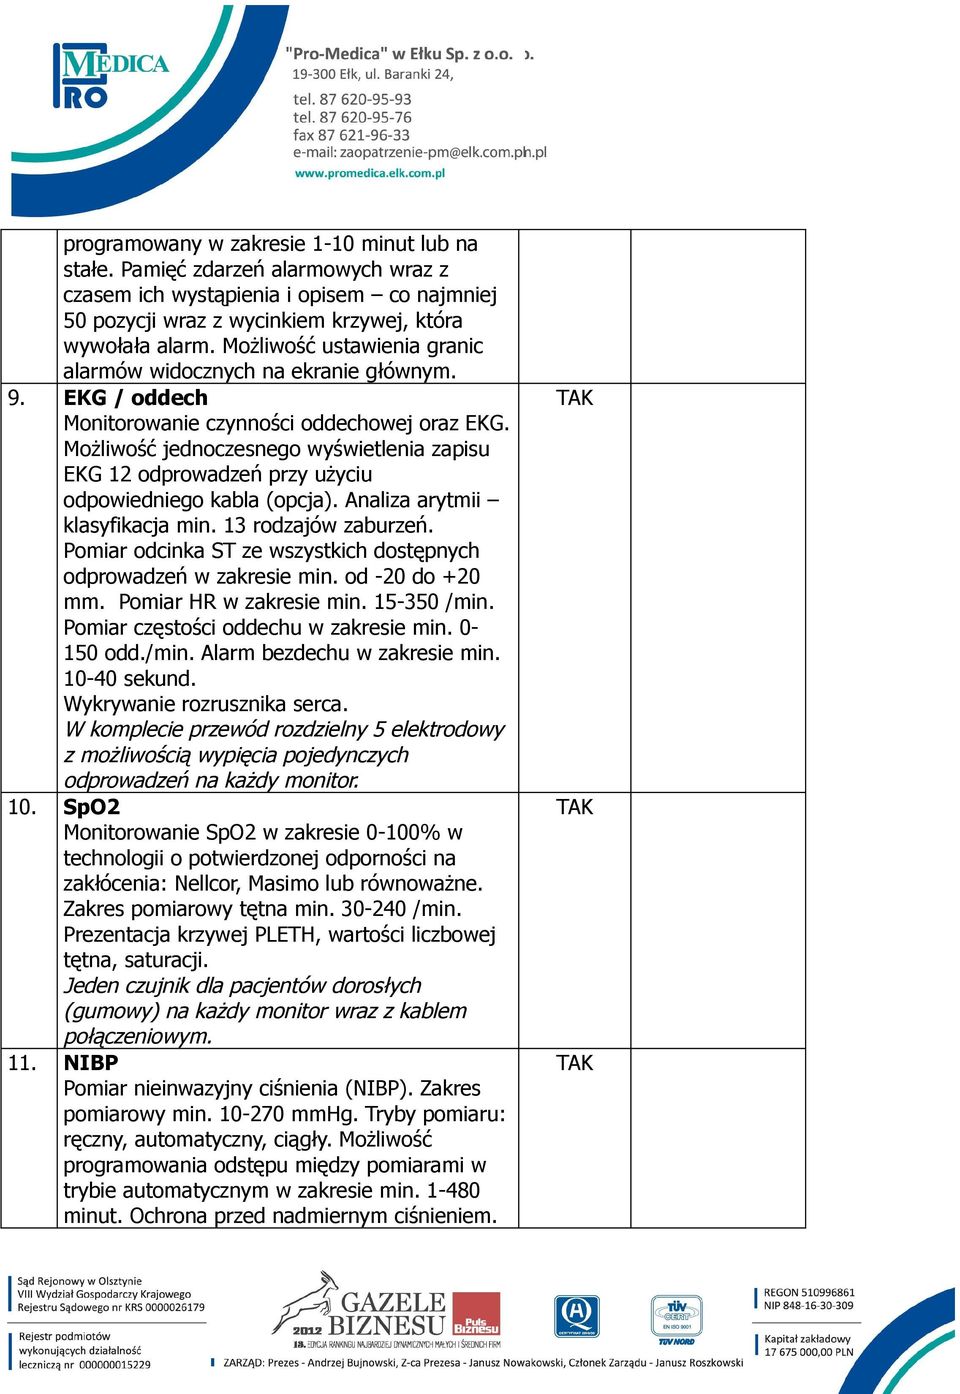 Możliwość jednoczesnego wyświetlenia zapisu EKG 12 odprowadzeń przy użyciu odpowiedniego kabla (opcja). Analiza arytmii klasyfikacja min. 13 rodzajów zaburzeń.